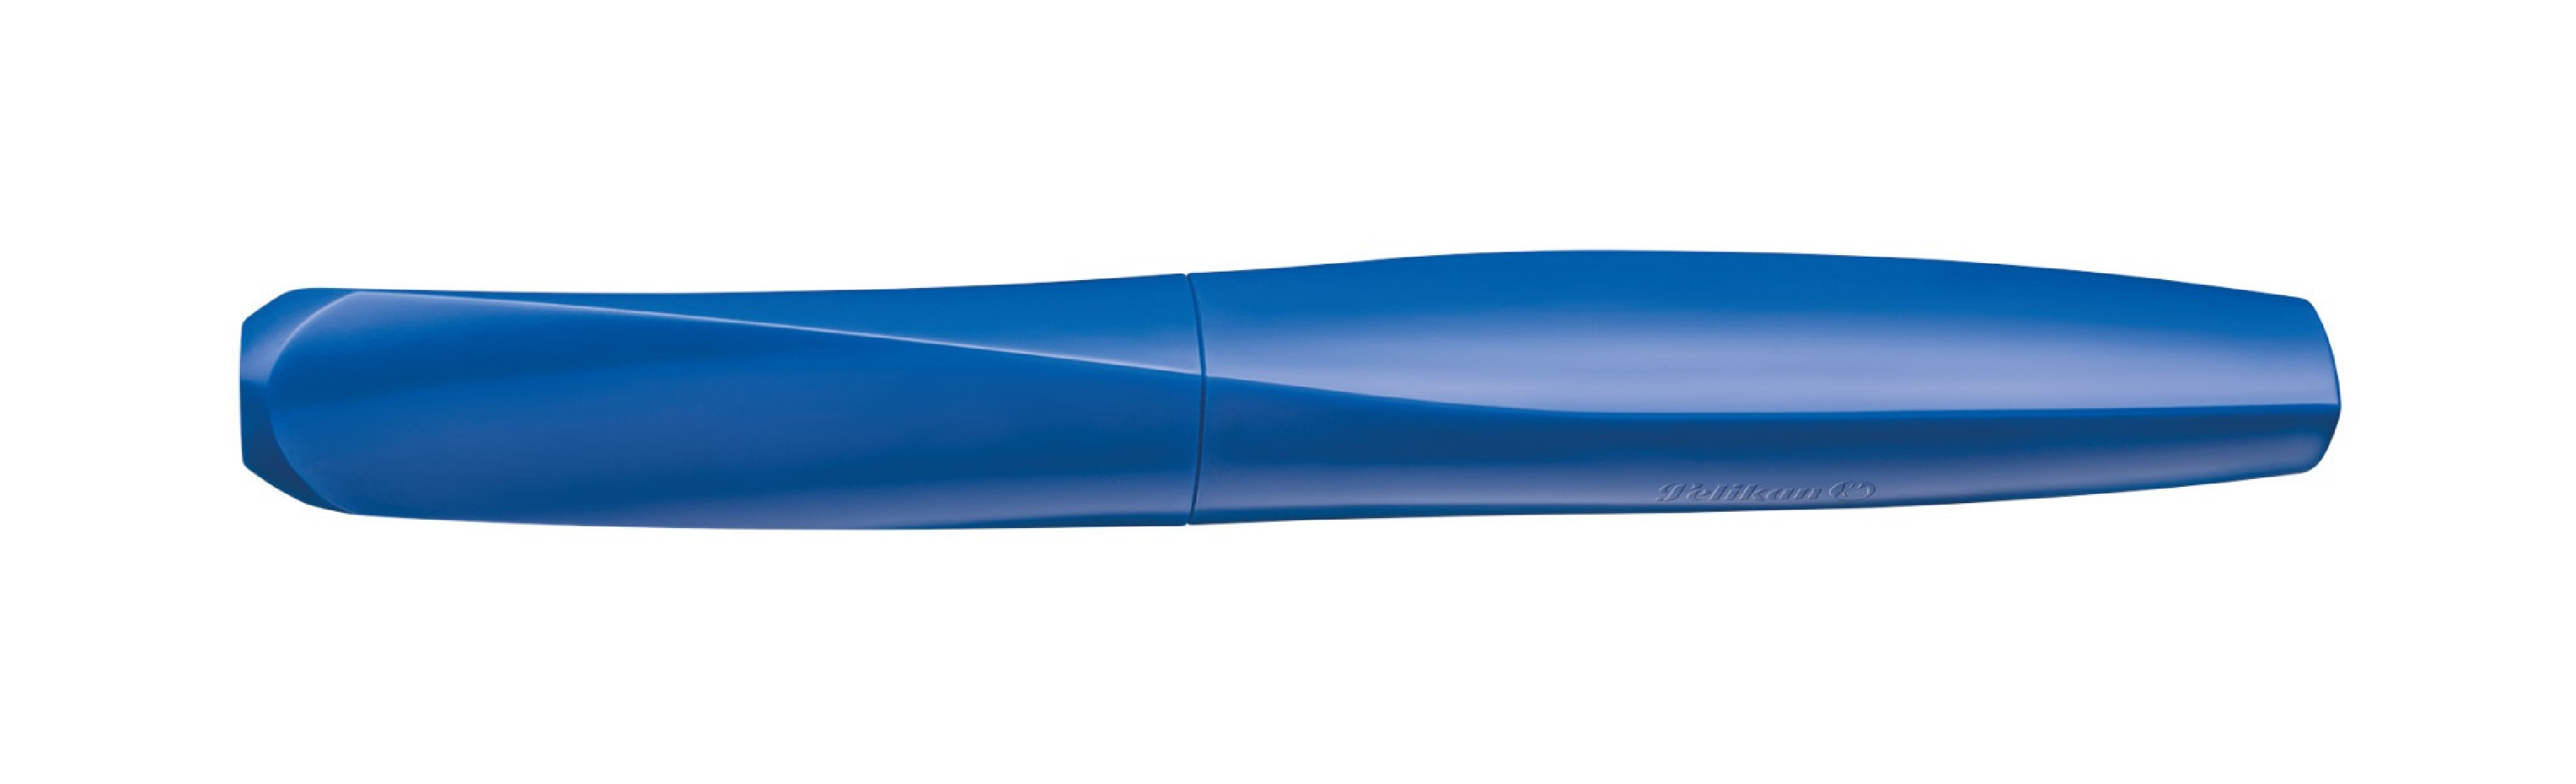 Pelikan Fountain pen Twist P457 M Deep Blue dynamic open